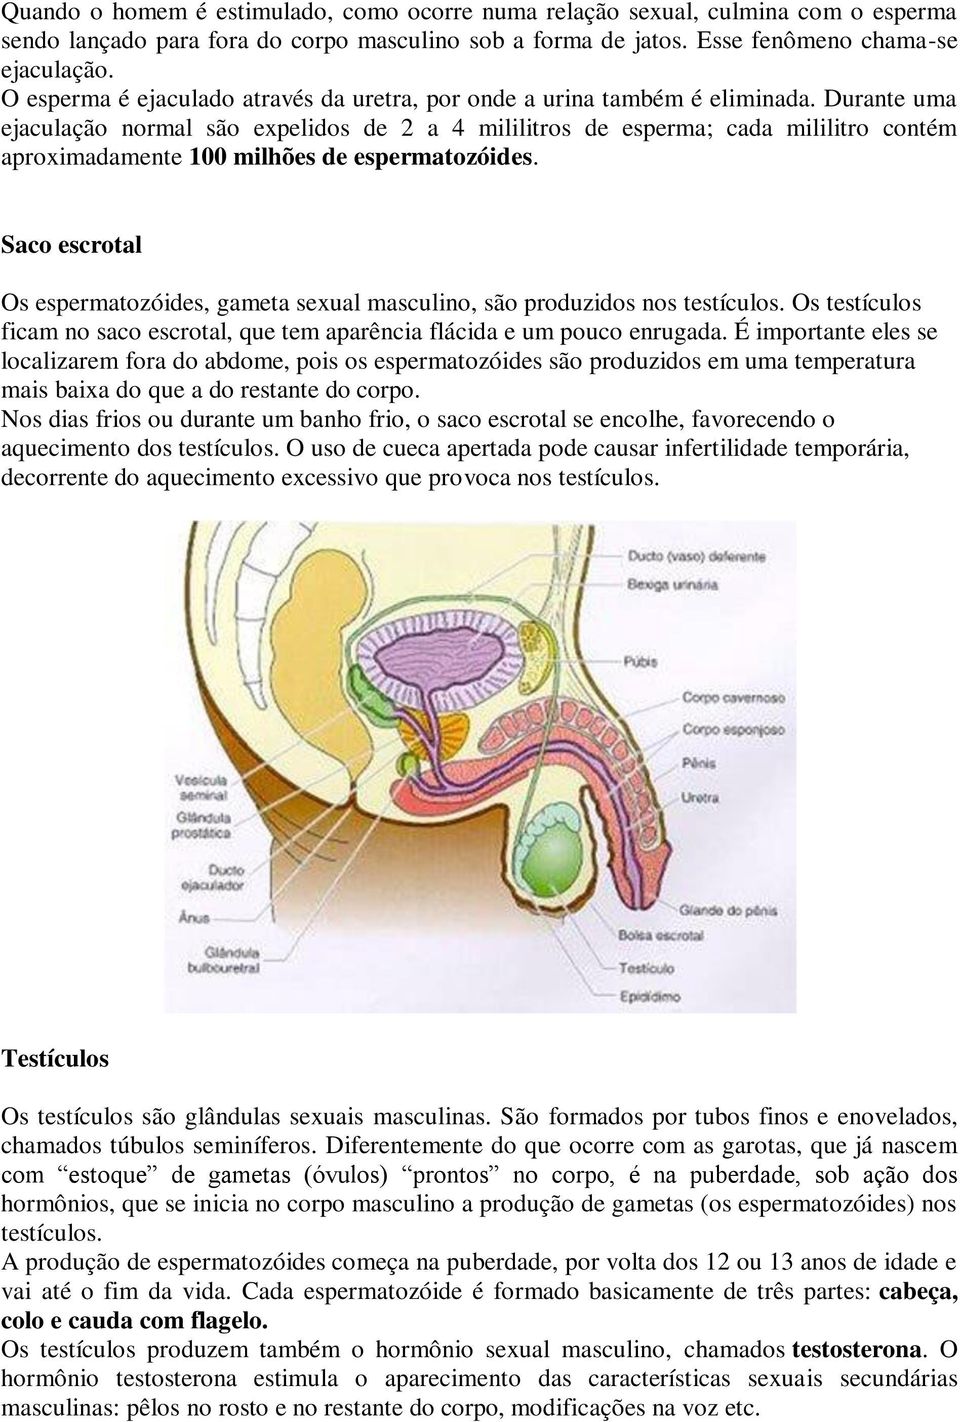 Durante uma ejaculação normal são expelidos de 2 a 4 mililitros de esperma; cada mililitro contém aproximadamente 100 milhões de espermatozóides.